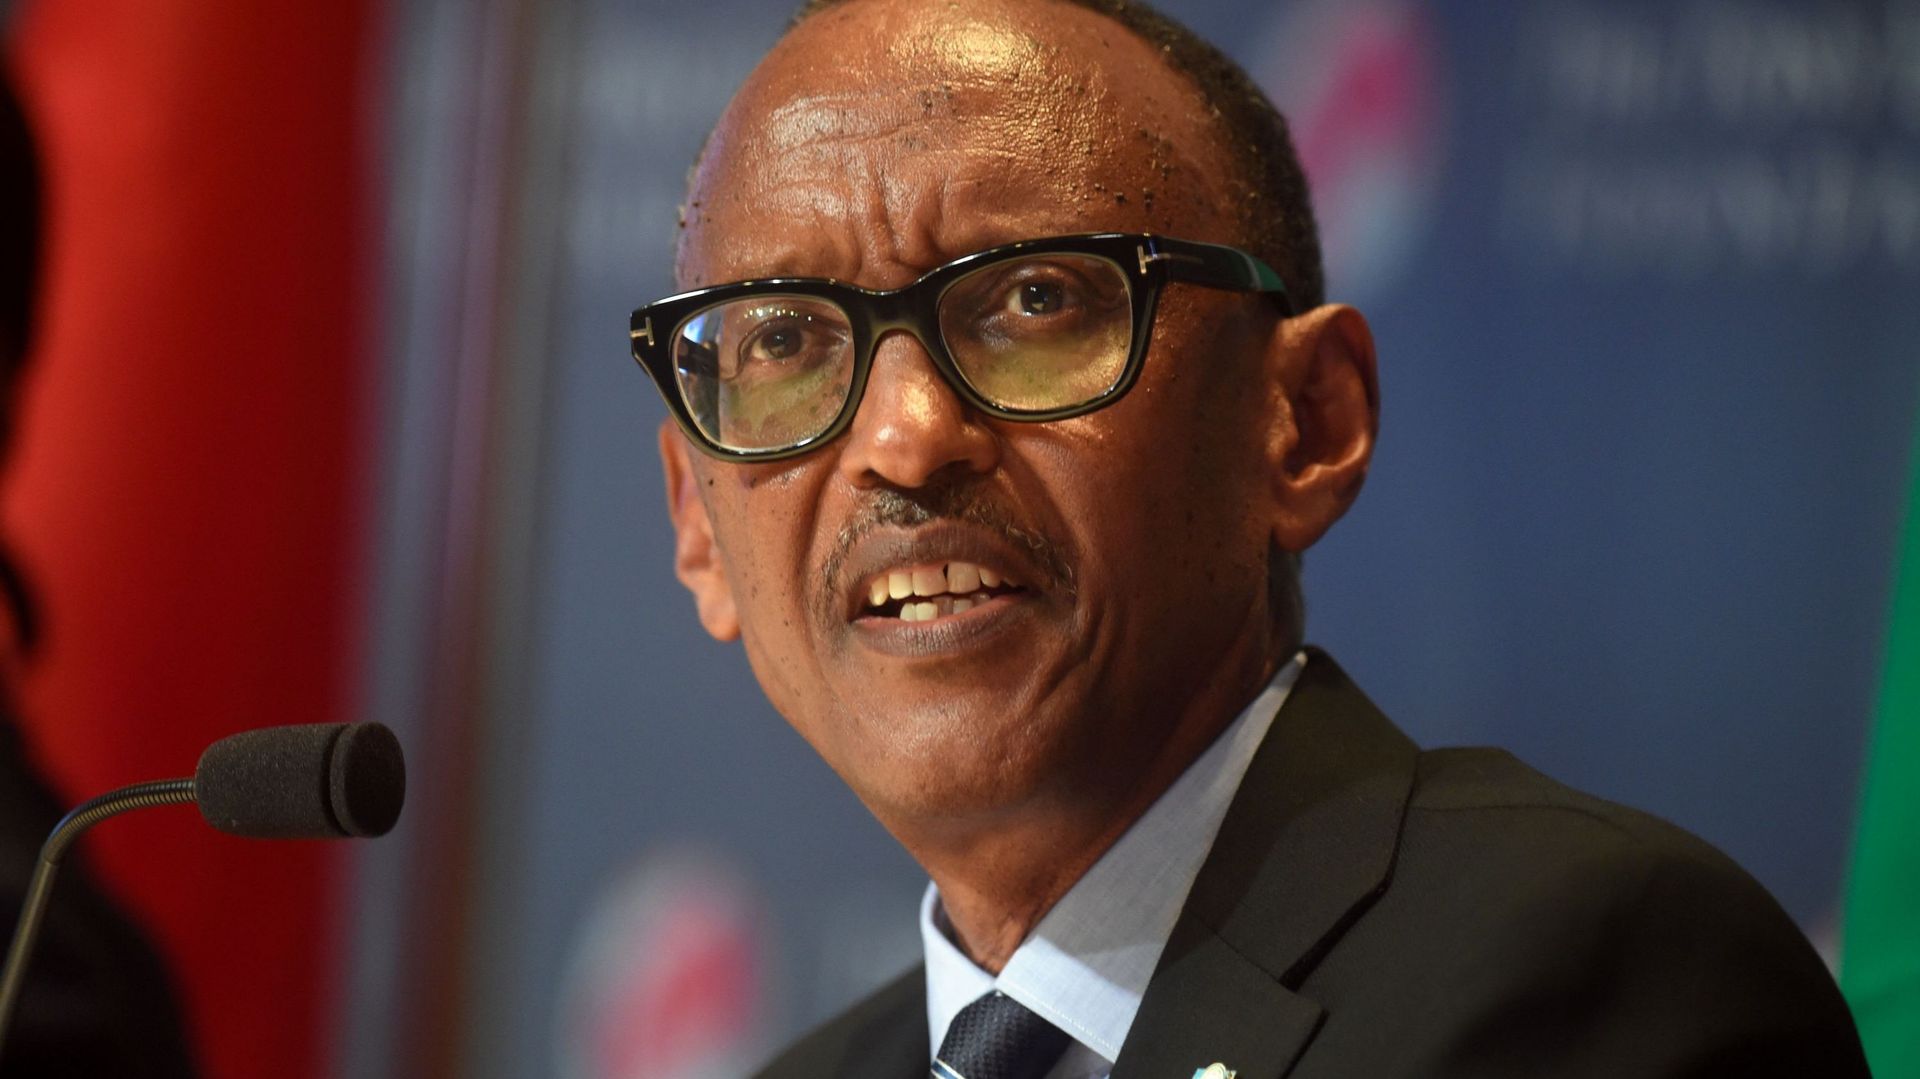 Génocide au Rwanda : l'enquête française sur l'attentat du 6 avril a été une "mascarade", dénonce Kigali